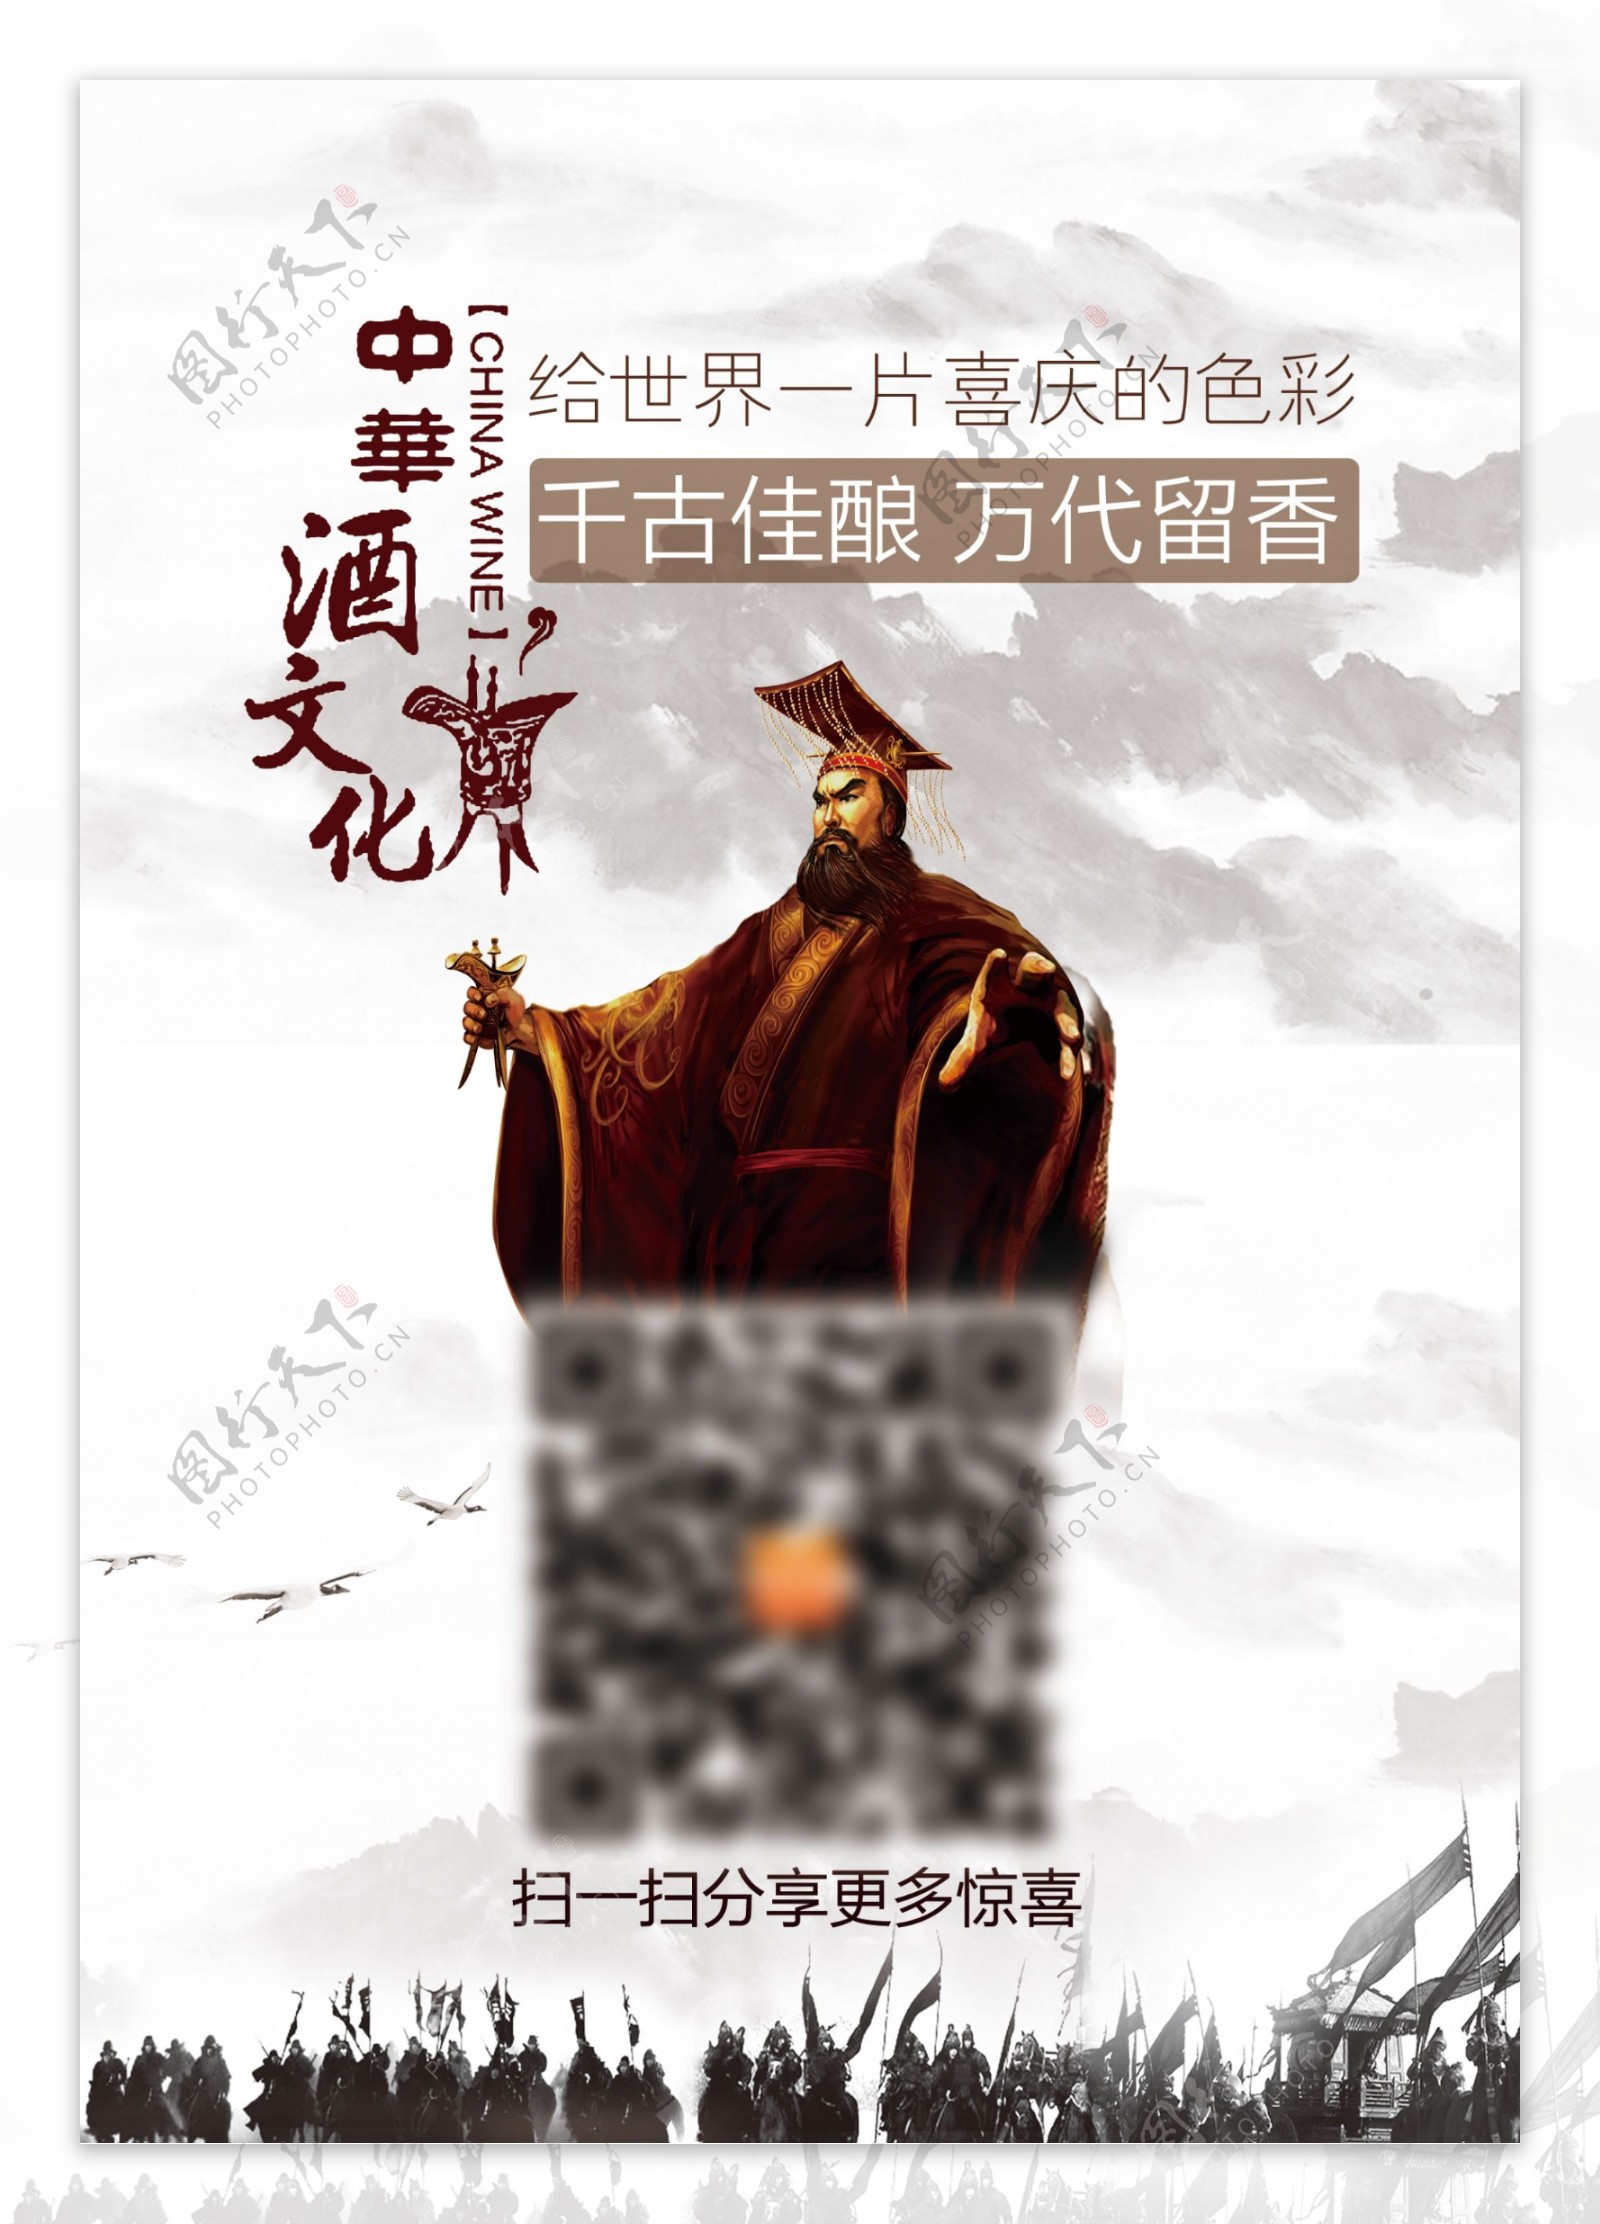 中国酒文化海报设计